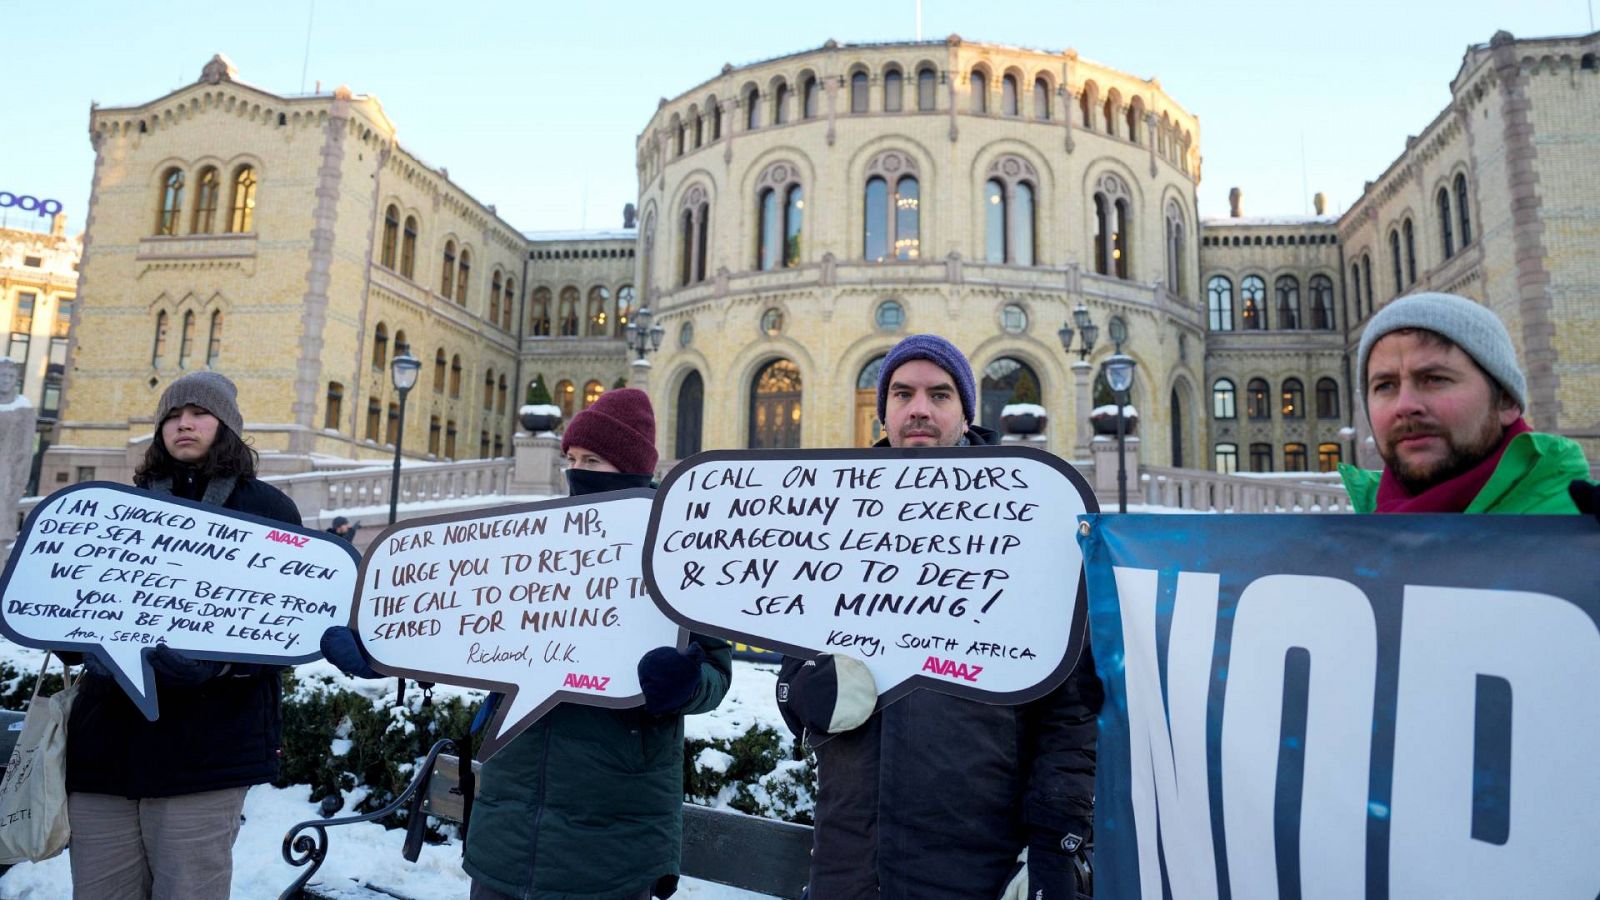 Varias personas protestan en Oslo, Noruega